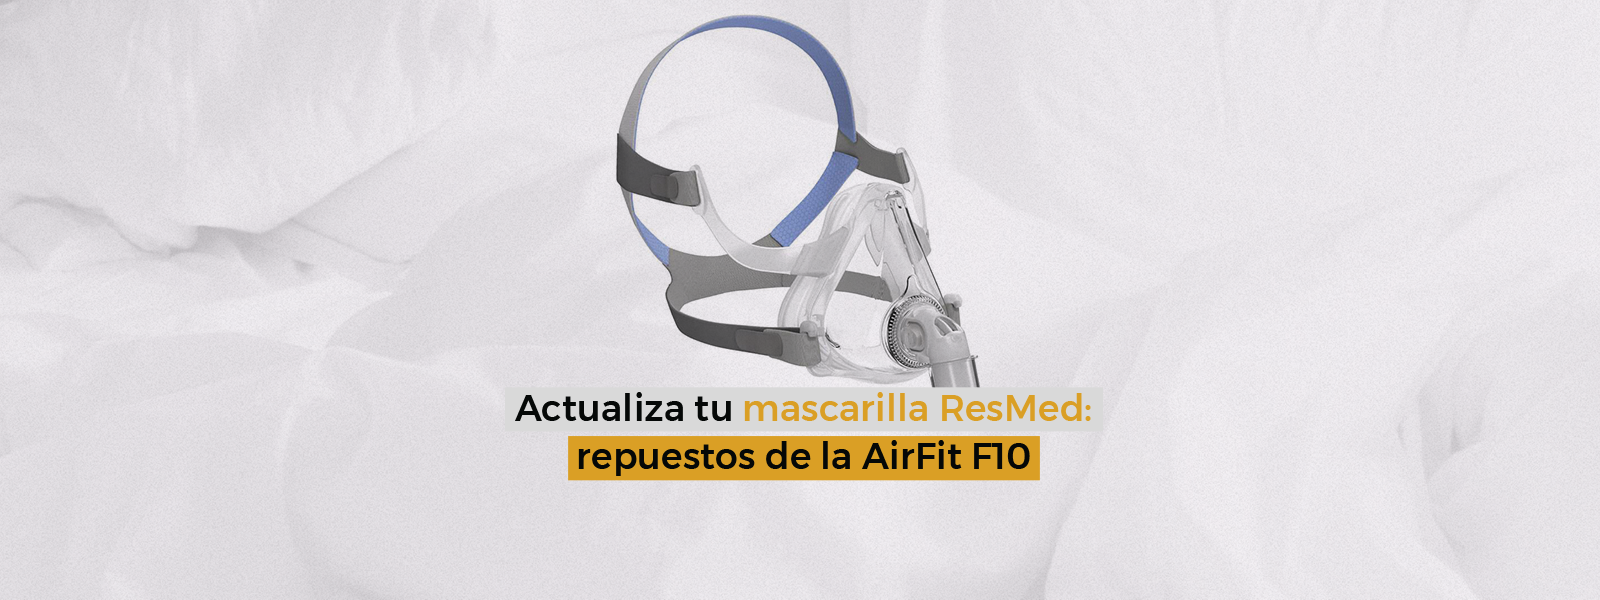 Actualiza tu mascarilla ResMed: repuestos de la AirFit F10